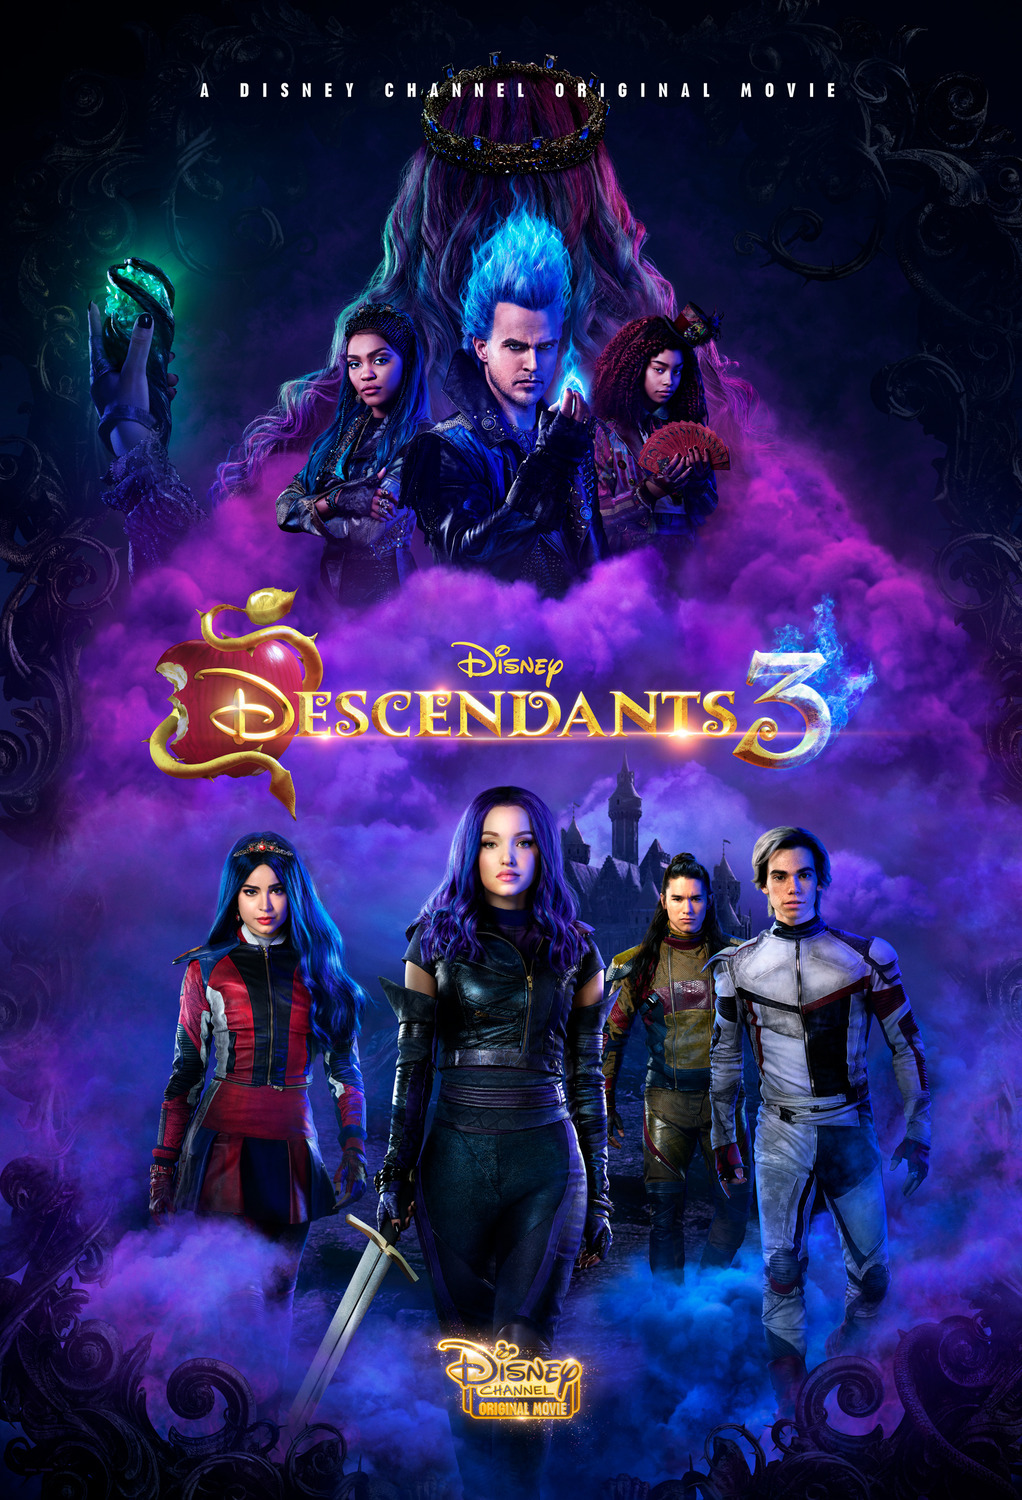 ดูหนังออนไลน์ฟรี Descendants 3 (2019) ดิสนีย์ เดสเซนแดนท์ส รวมพลทายาทตัวร้าย 3